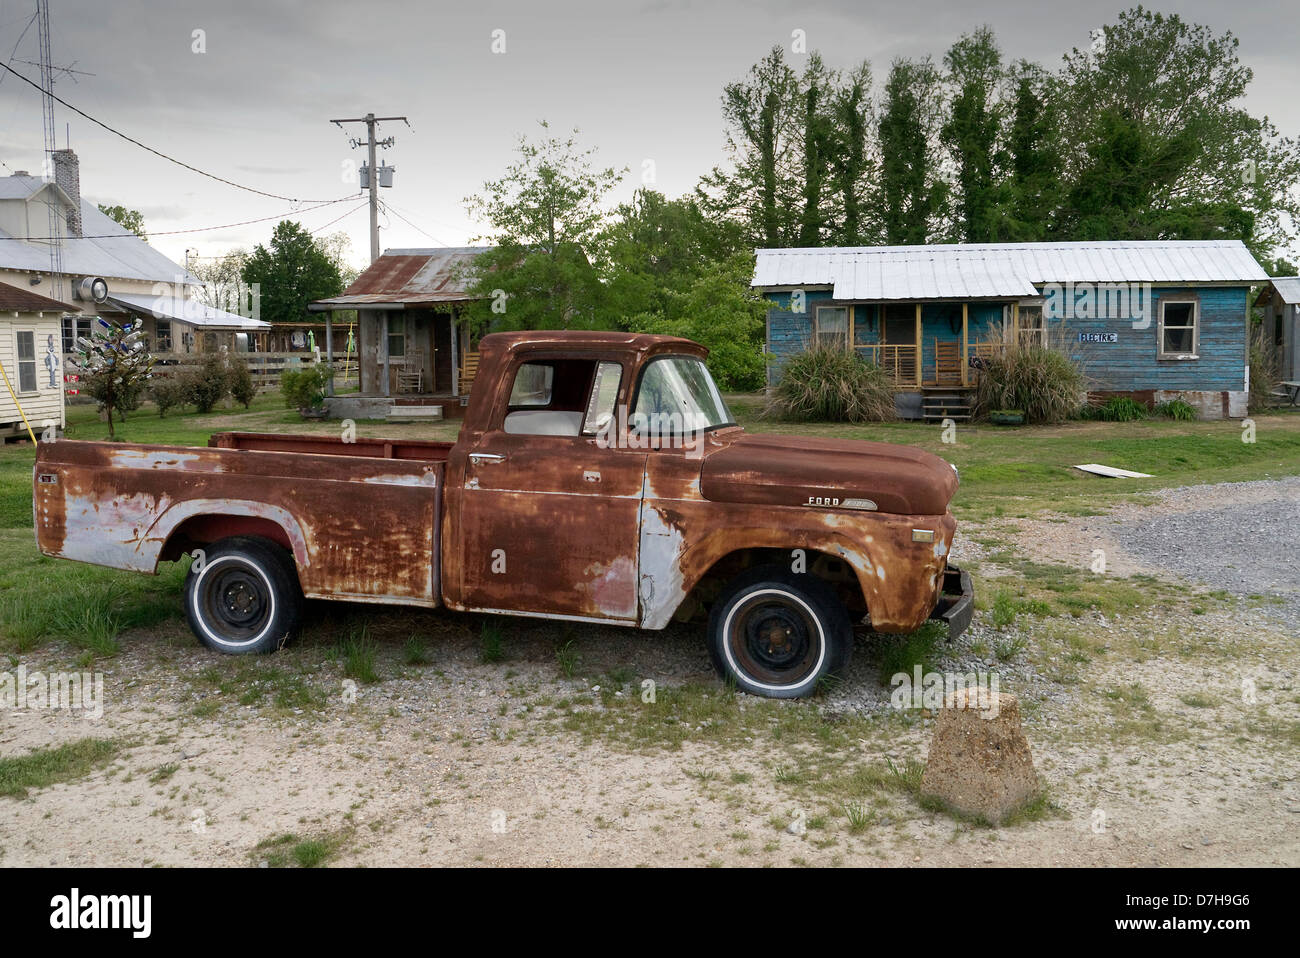 Vieux camion stationné à la préservation Hopson Clarksdale Mississippi USA Entreprise Banque D'Images